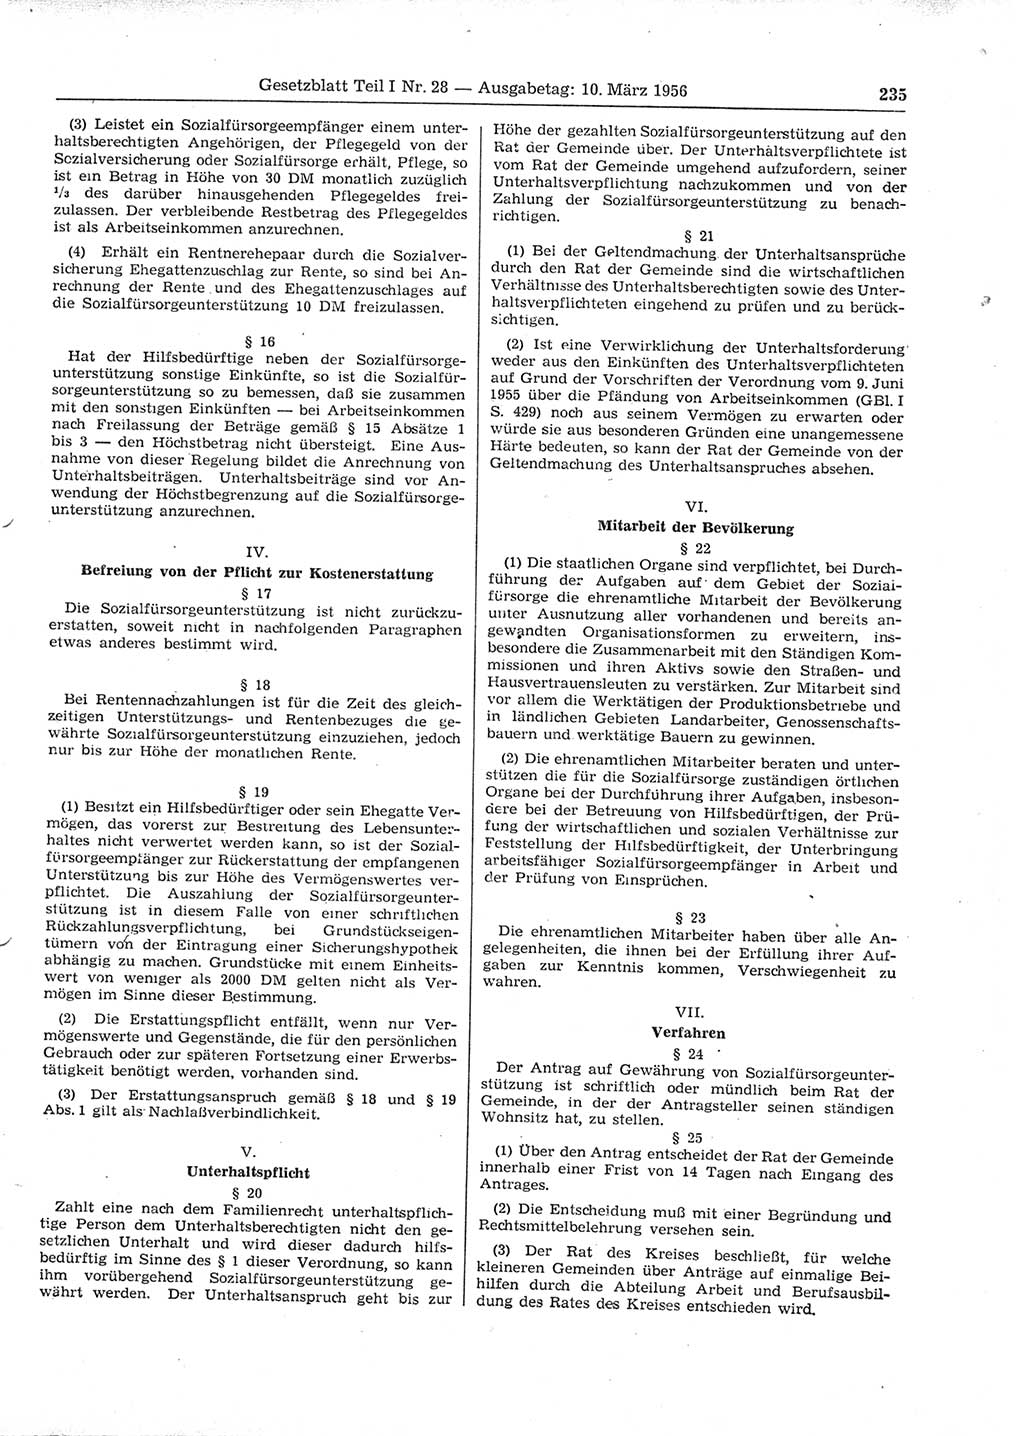 Gesetzblatt (GBl.) der Deutschen Demokratischen Republik (DDR) Teil Ⅰ 1956, Seite 235 (GBl. DDR Ⅰ 1956, S. 235)